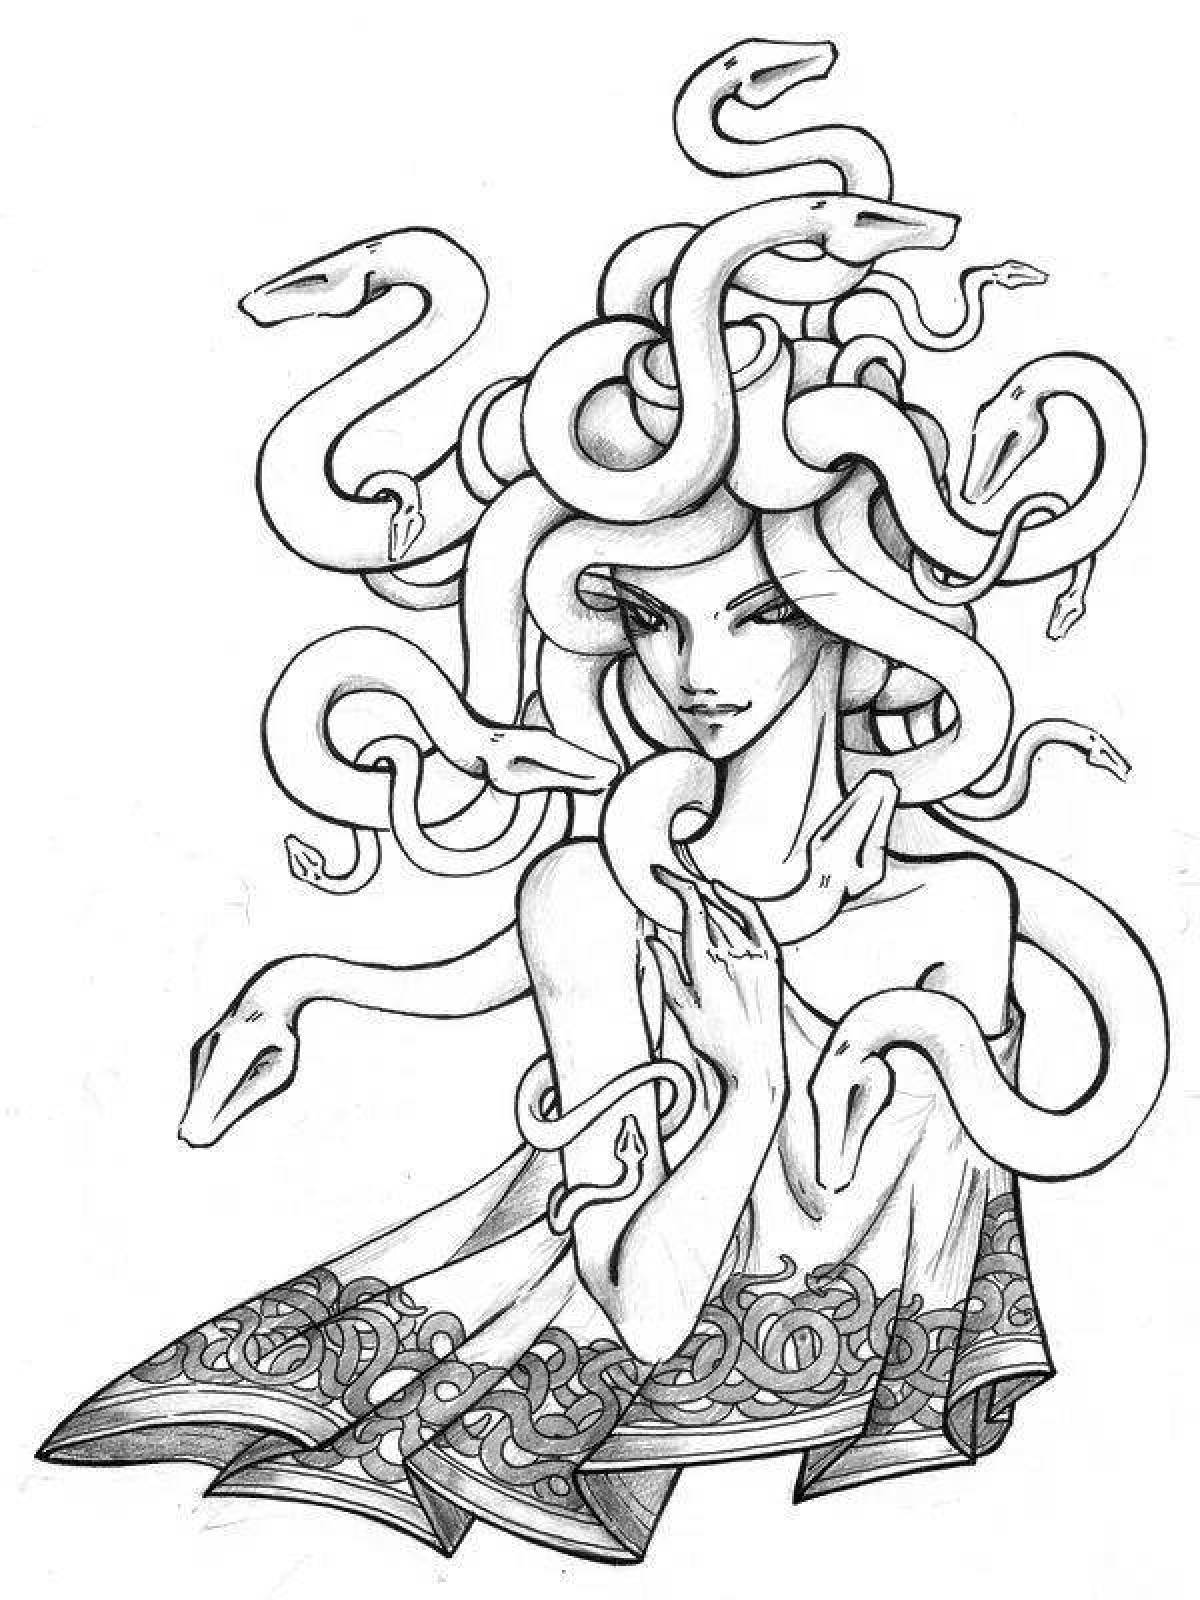 Gorgon medusa coloring book